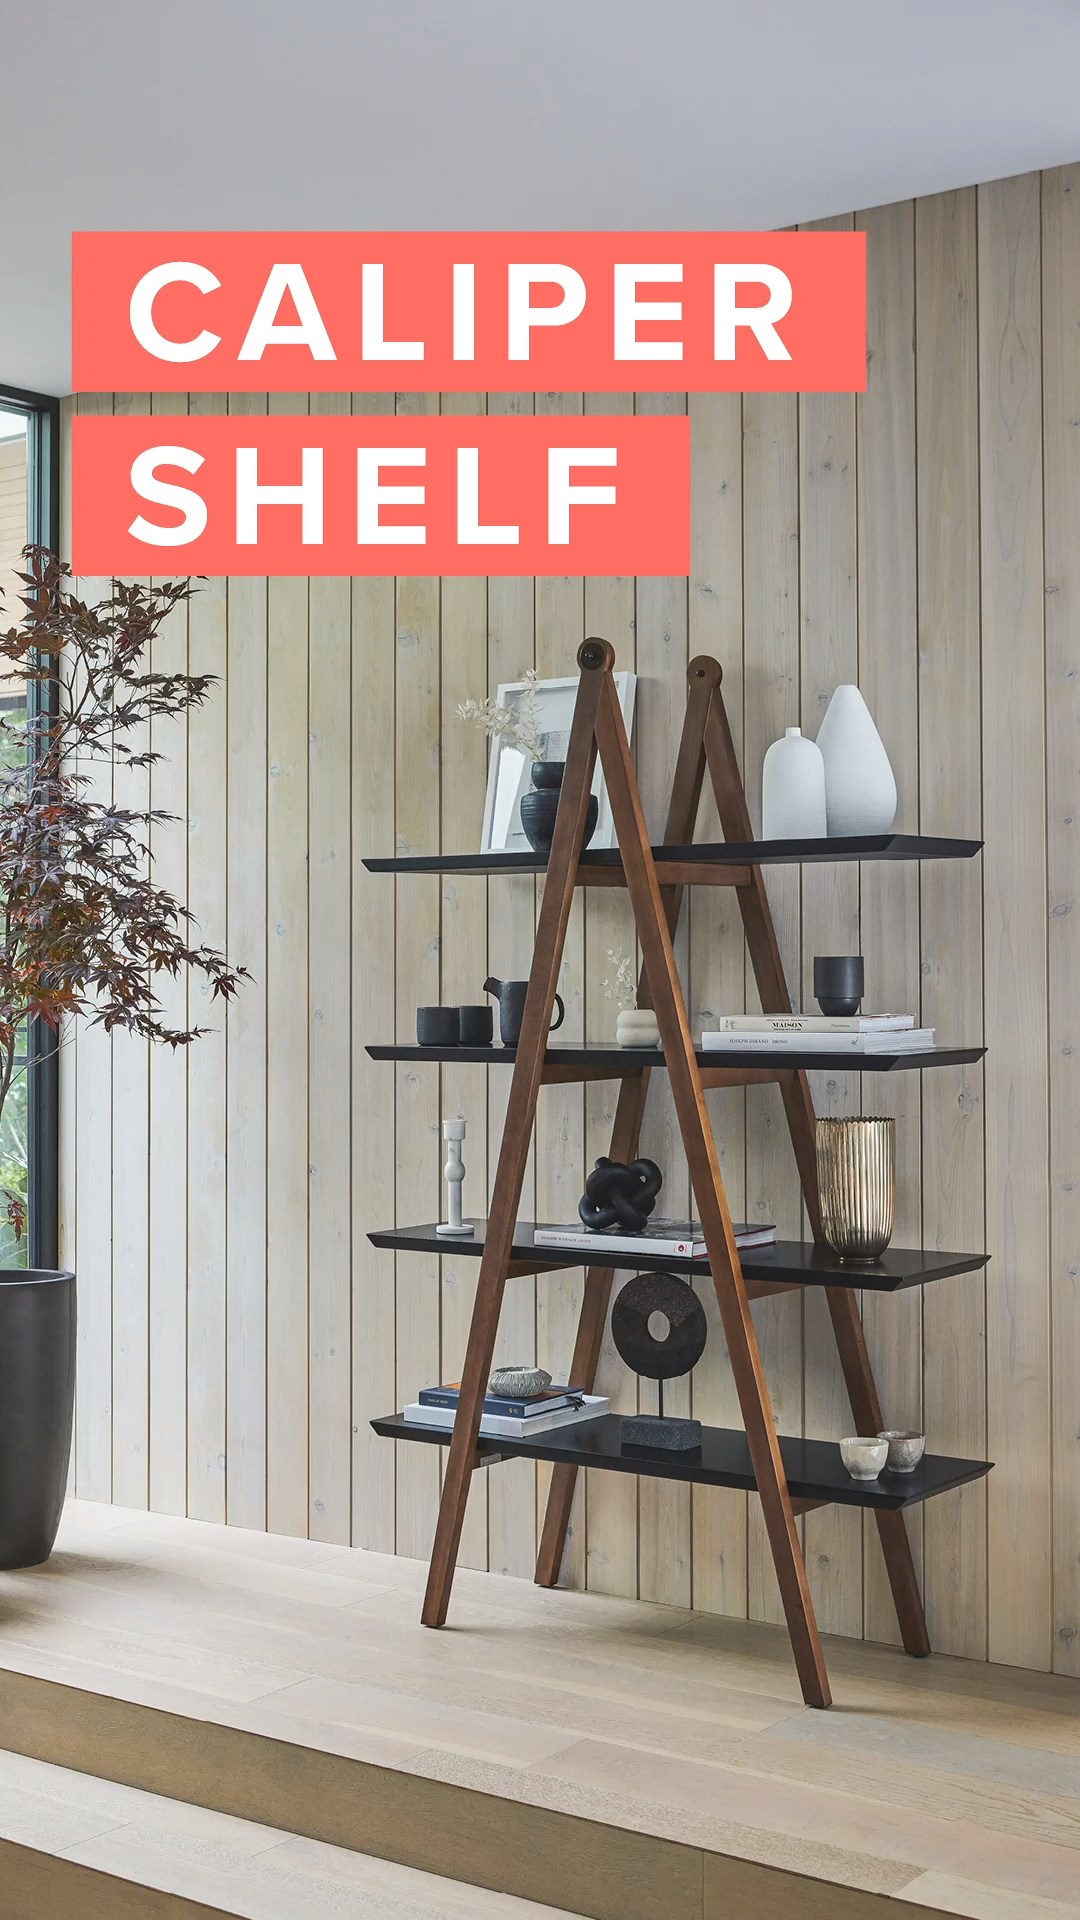 17 diy Shelves for renters ideas